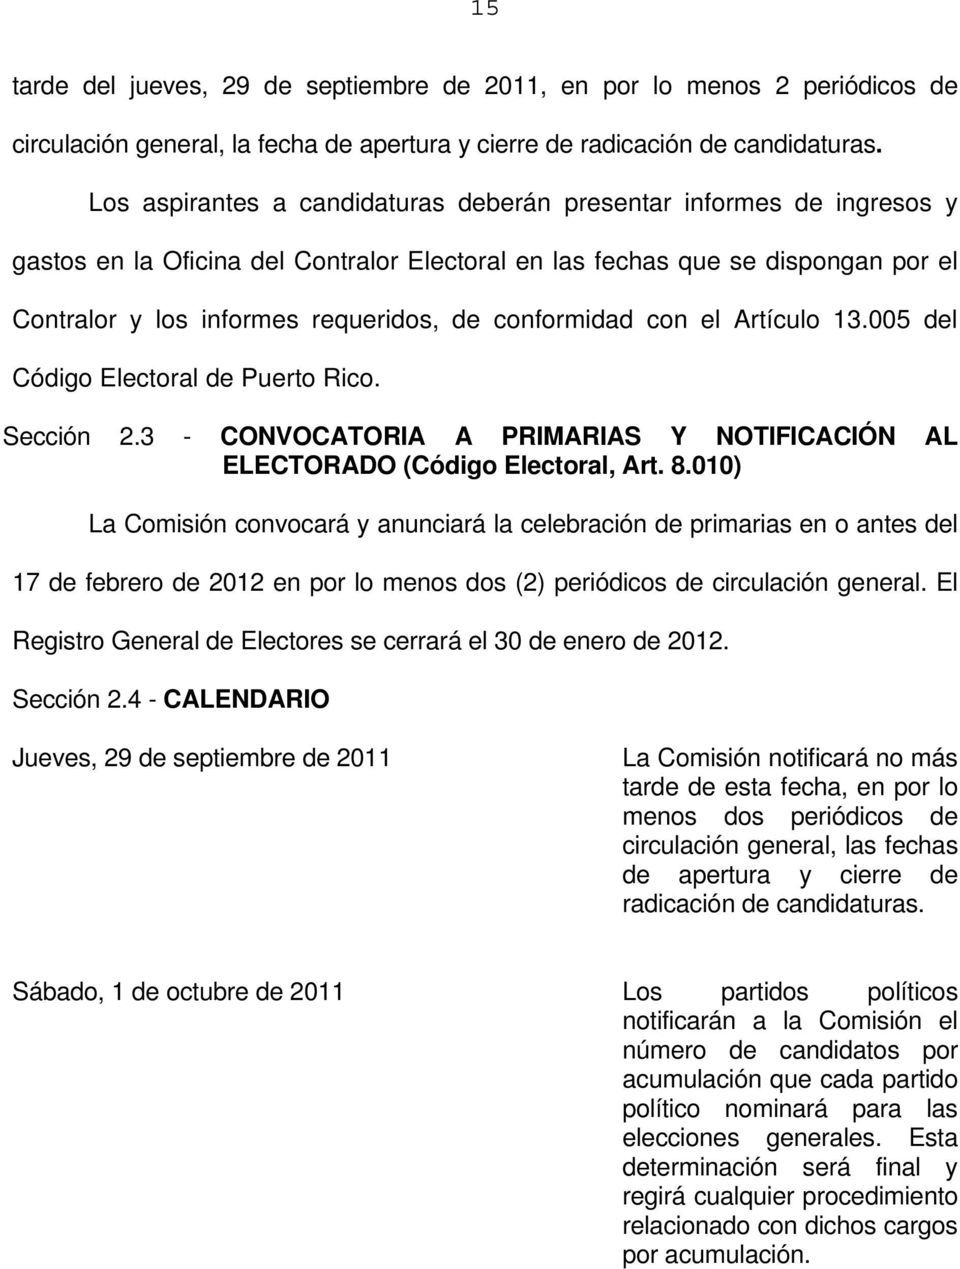 conformidad con el Artículo 13.005 del Código Electoral de Puerto Rico. Sección 2.3 - CONVOCATORIA A PRIMARIAS Y NOTIFICACIÓN AL ELECTORADO (Código Electoral, Art. 8.